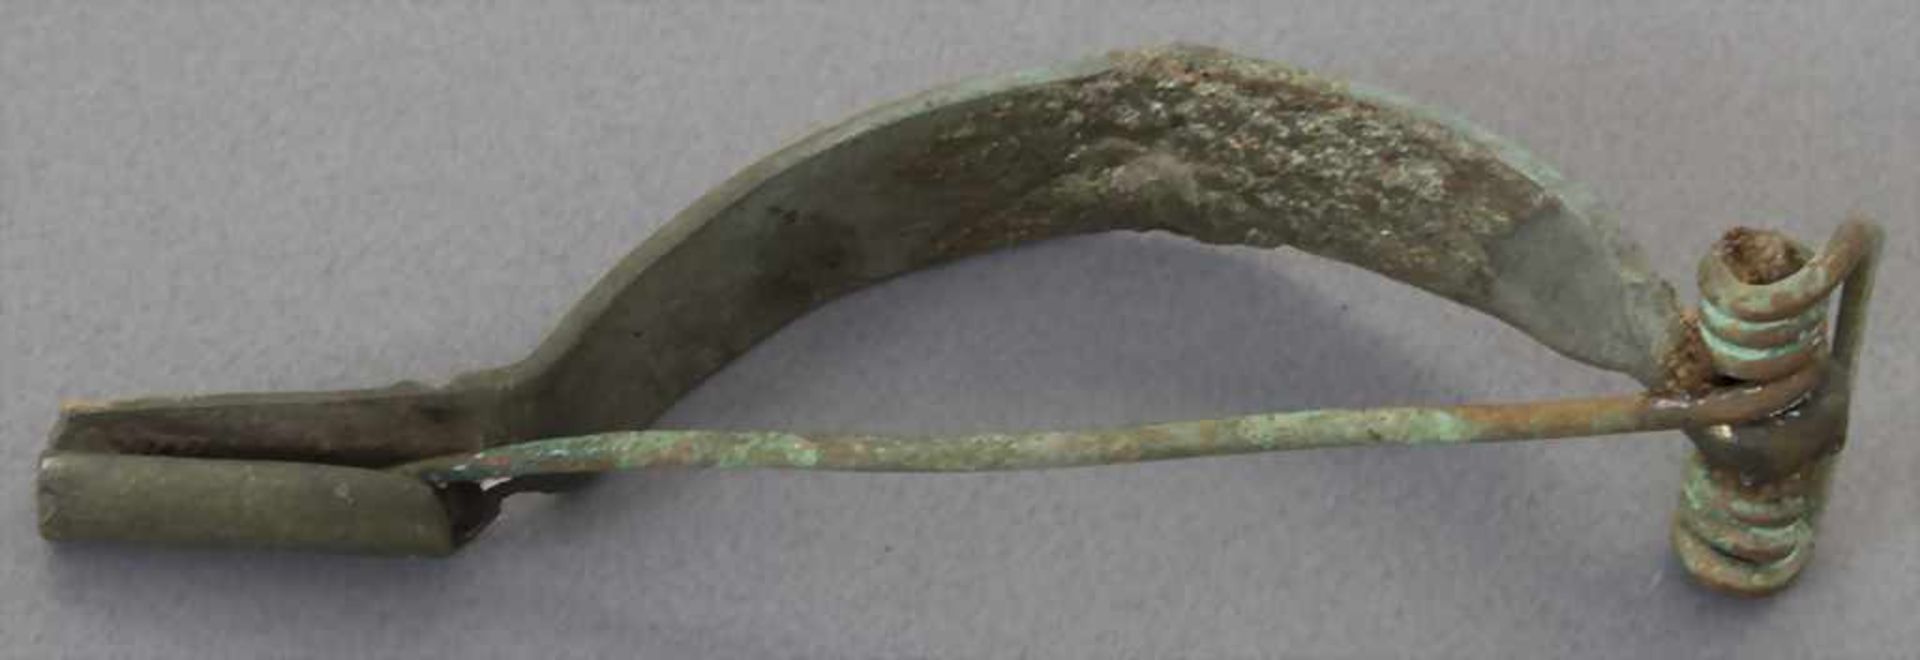 Keltische Fibel / A celtic fibulaMaterial: Bronze,Länge: 6,7 cm,Zustand: gut, alt restauriert, - Bild 3 aus 3